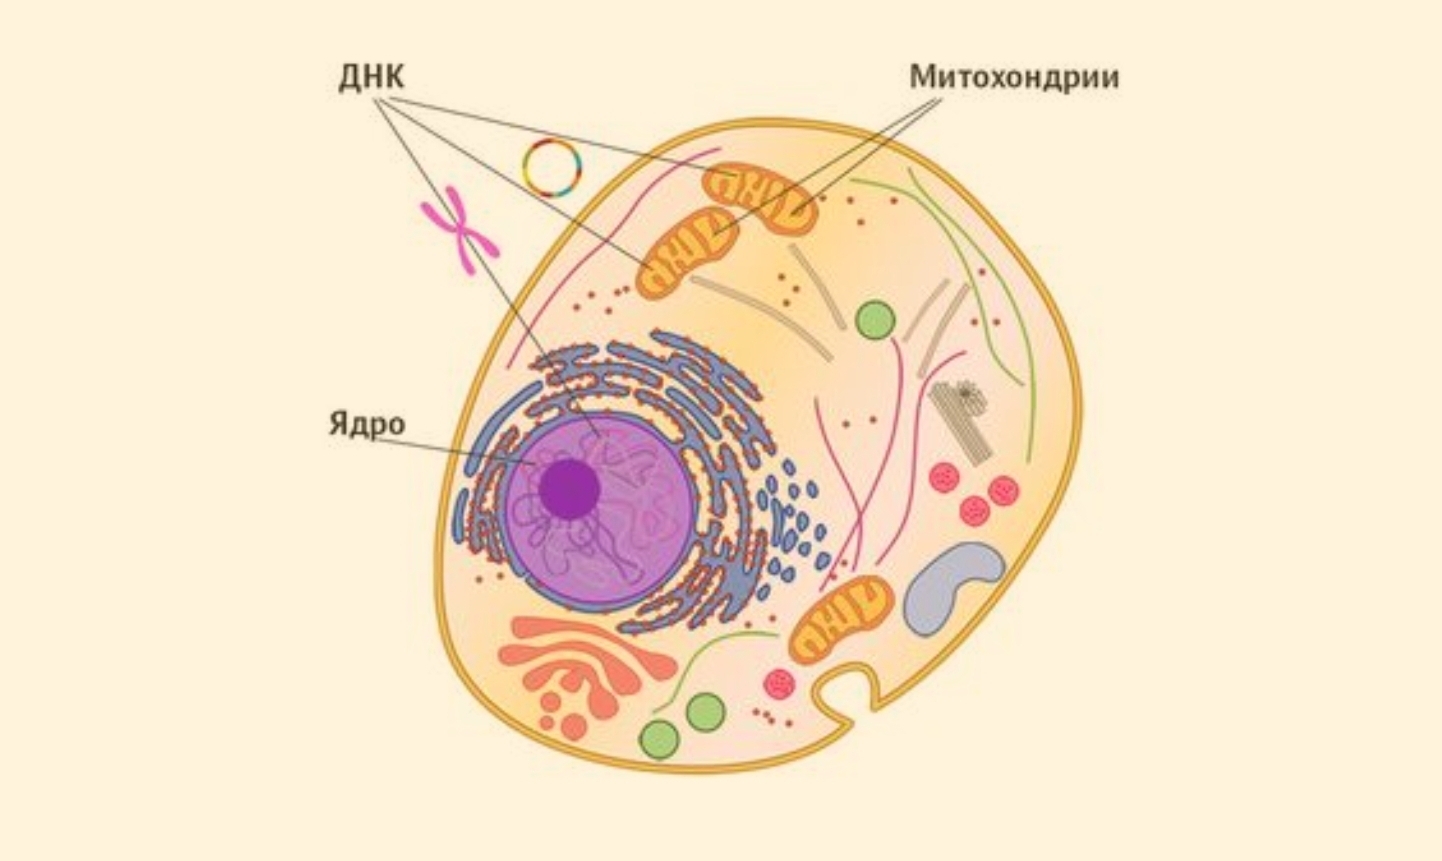 Клетки с гиперхромными ядрами